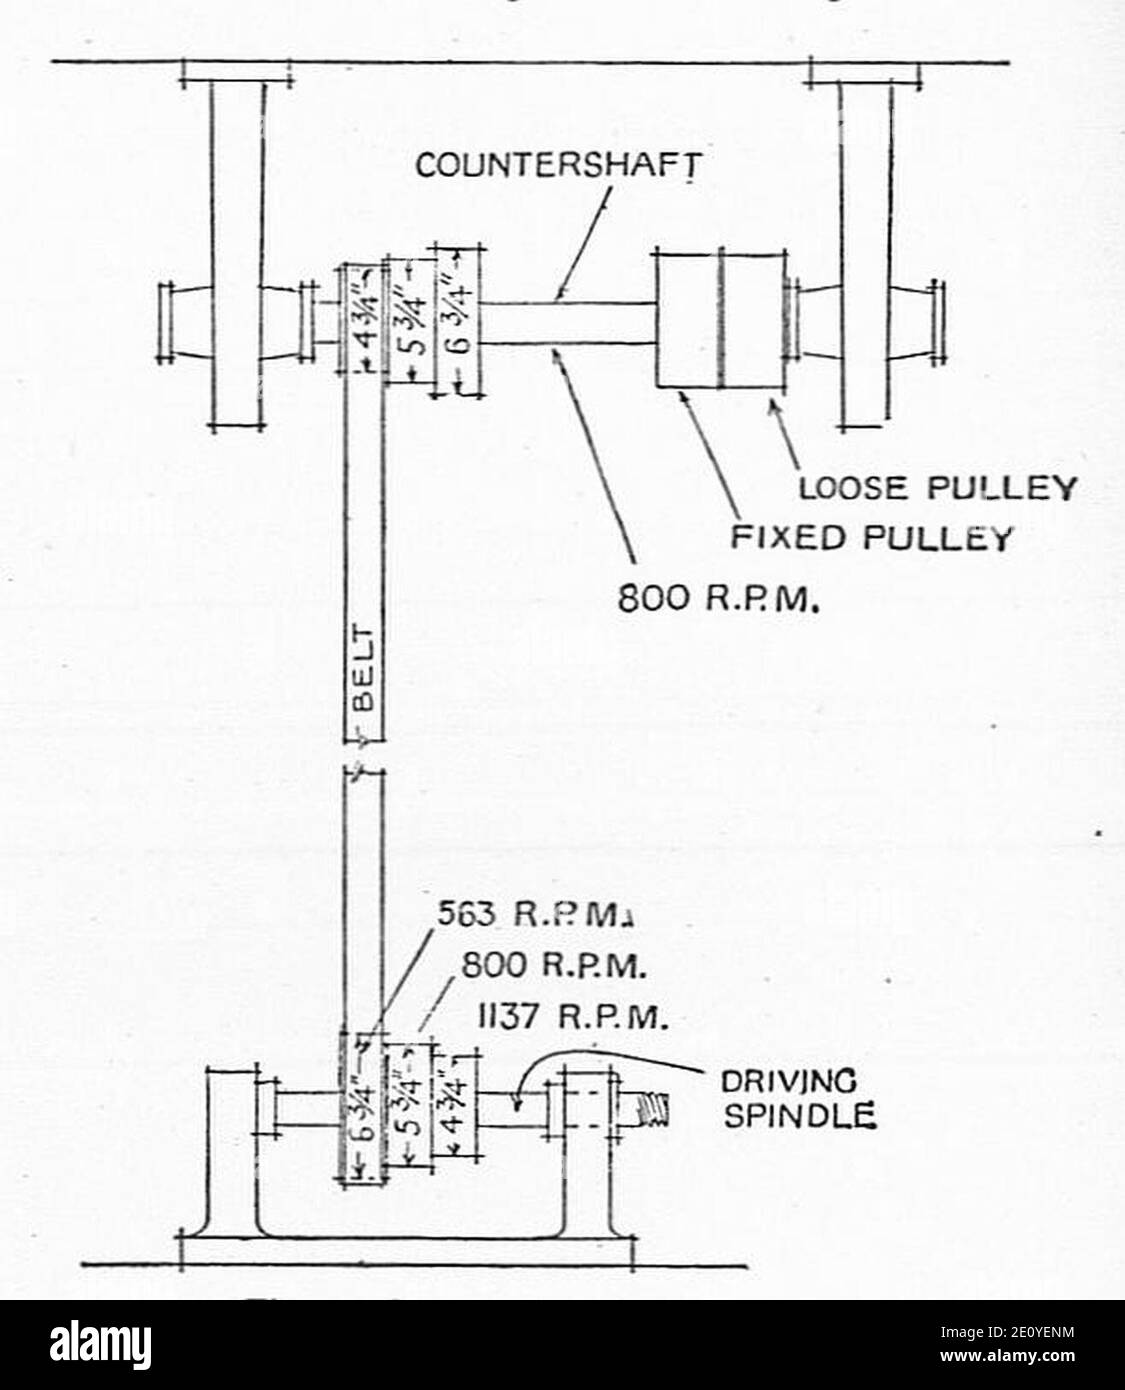 Linienantrieb zur Drehmaschine, mit stufenförmigen Riemenscheiben für  variable Drehzahl (Schreinerei und Schreinerei, 1925 Stockfotografie - Alamy